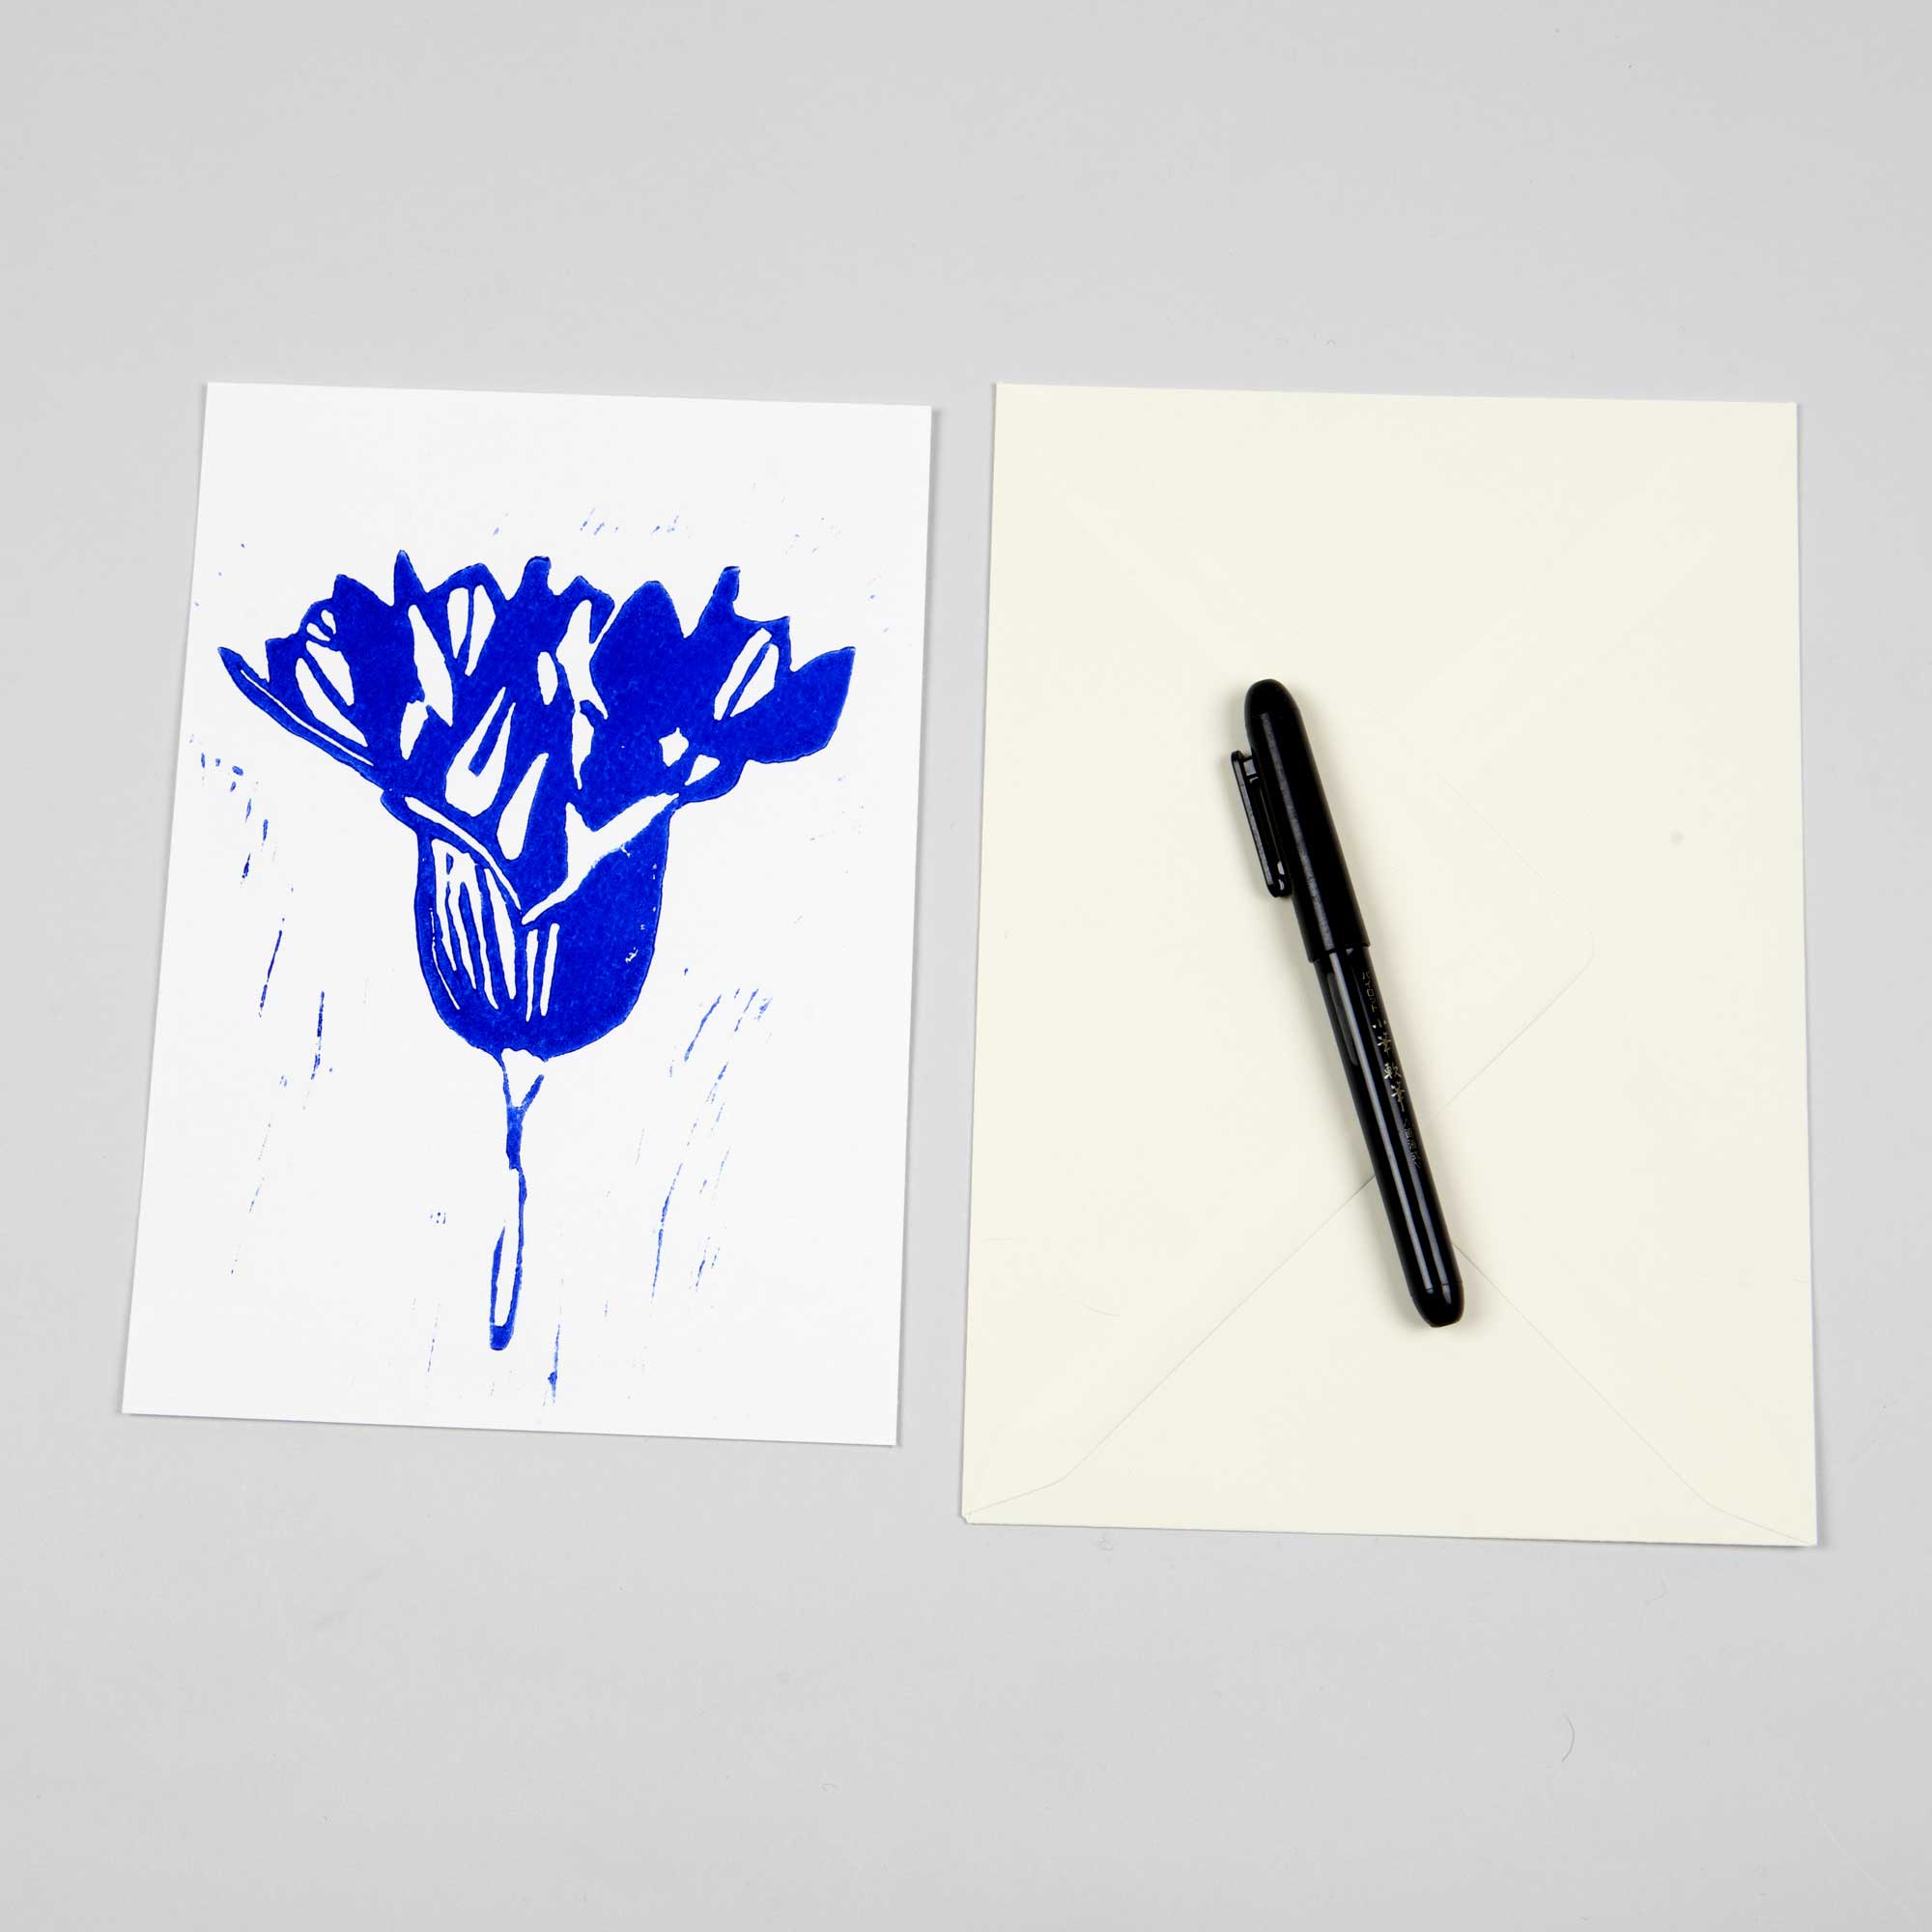 Greeting card, Onion flower, Linocut by Anne Rosenberg, RosenbergCph